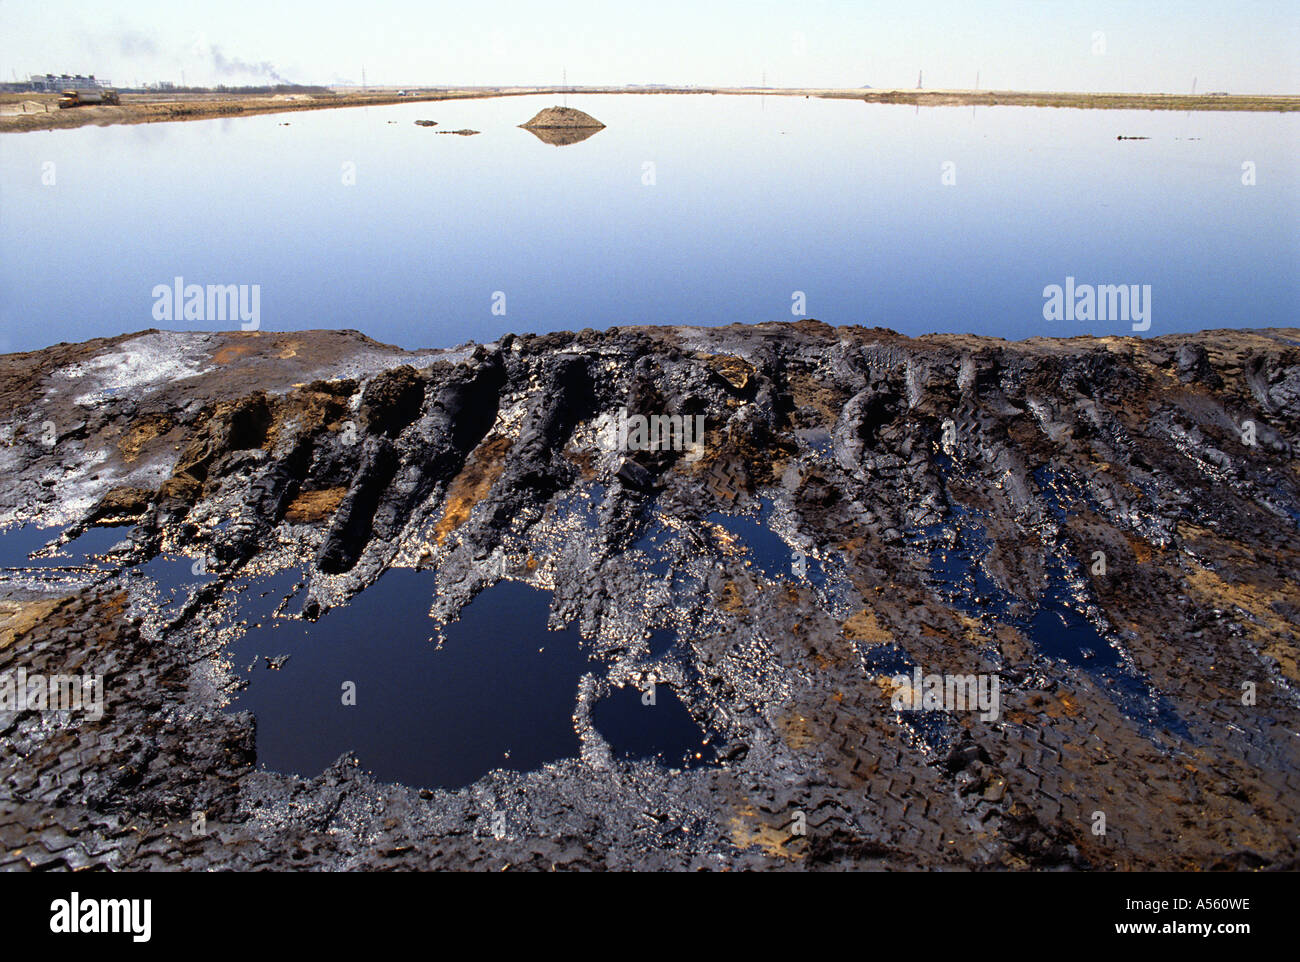 Les traces de pneus dans la boue à côté de vaste lac d'huile au Koweït Banque D'Images